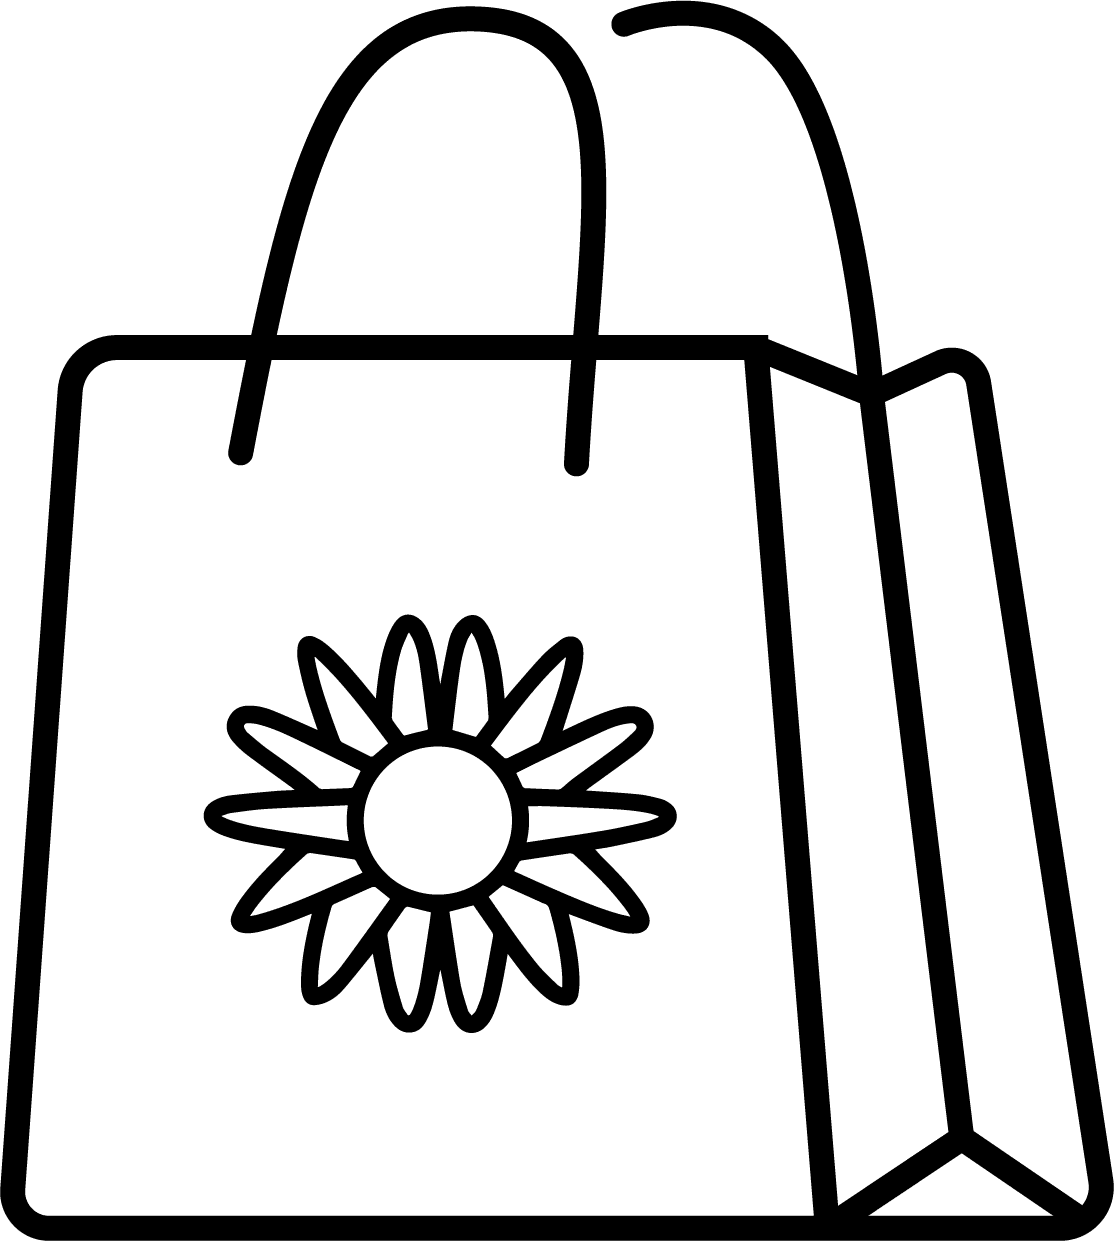 Plaza Hollandi - shopping bag